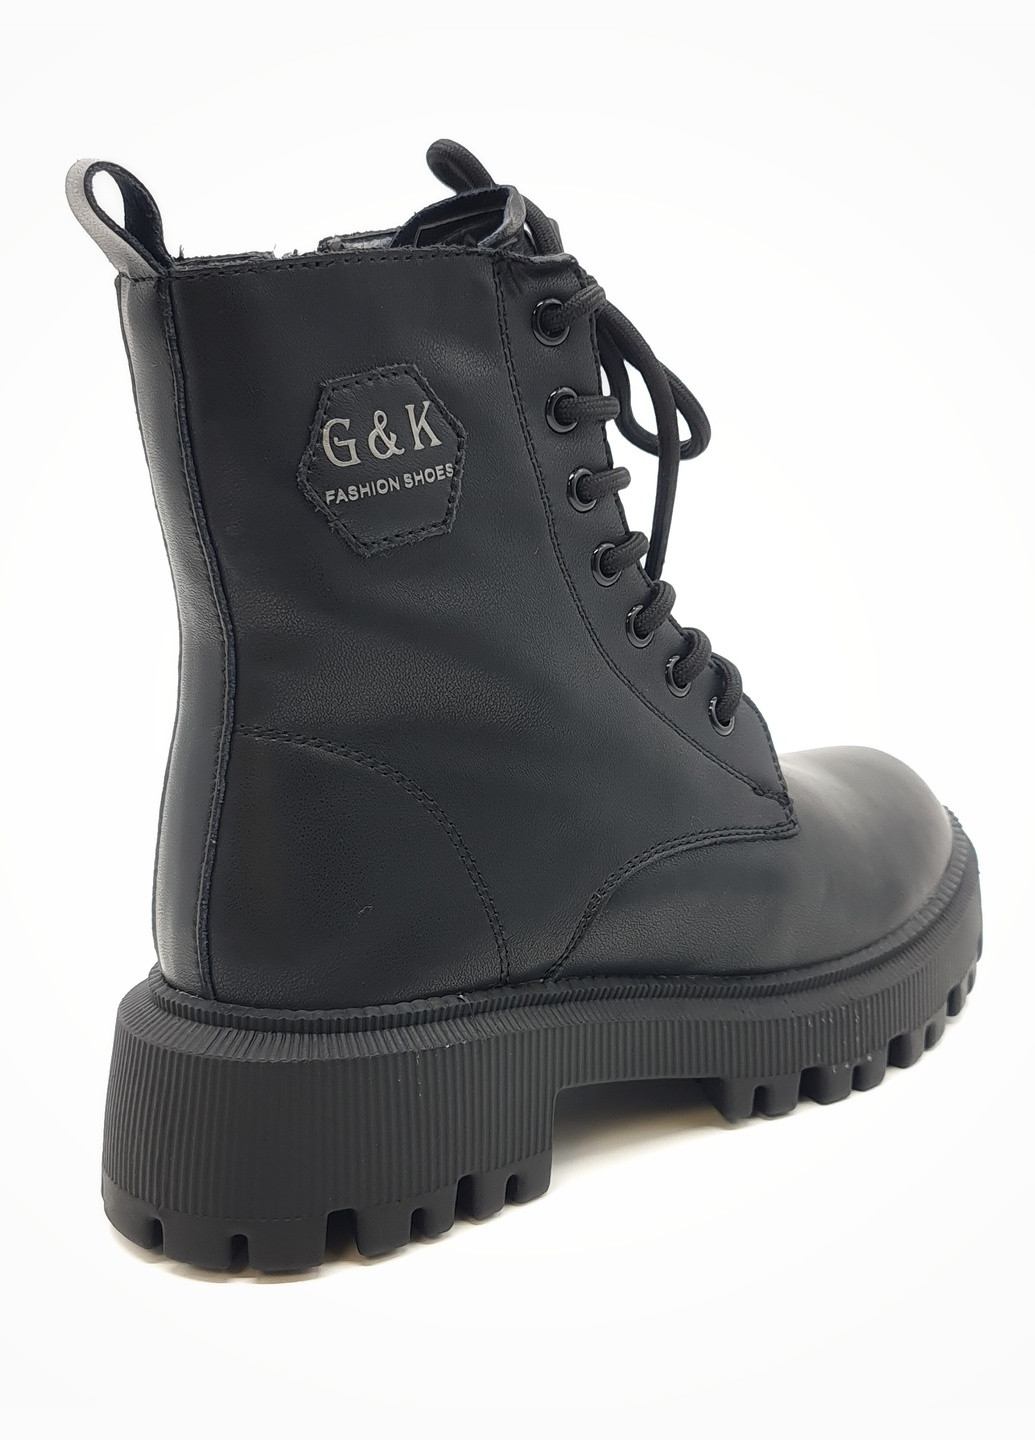 Осенние женские ботинки зимние черные кожаные ii-11-2 23 см(р) It is